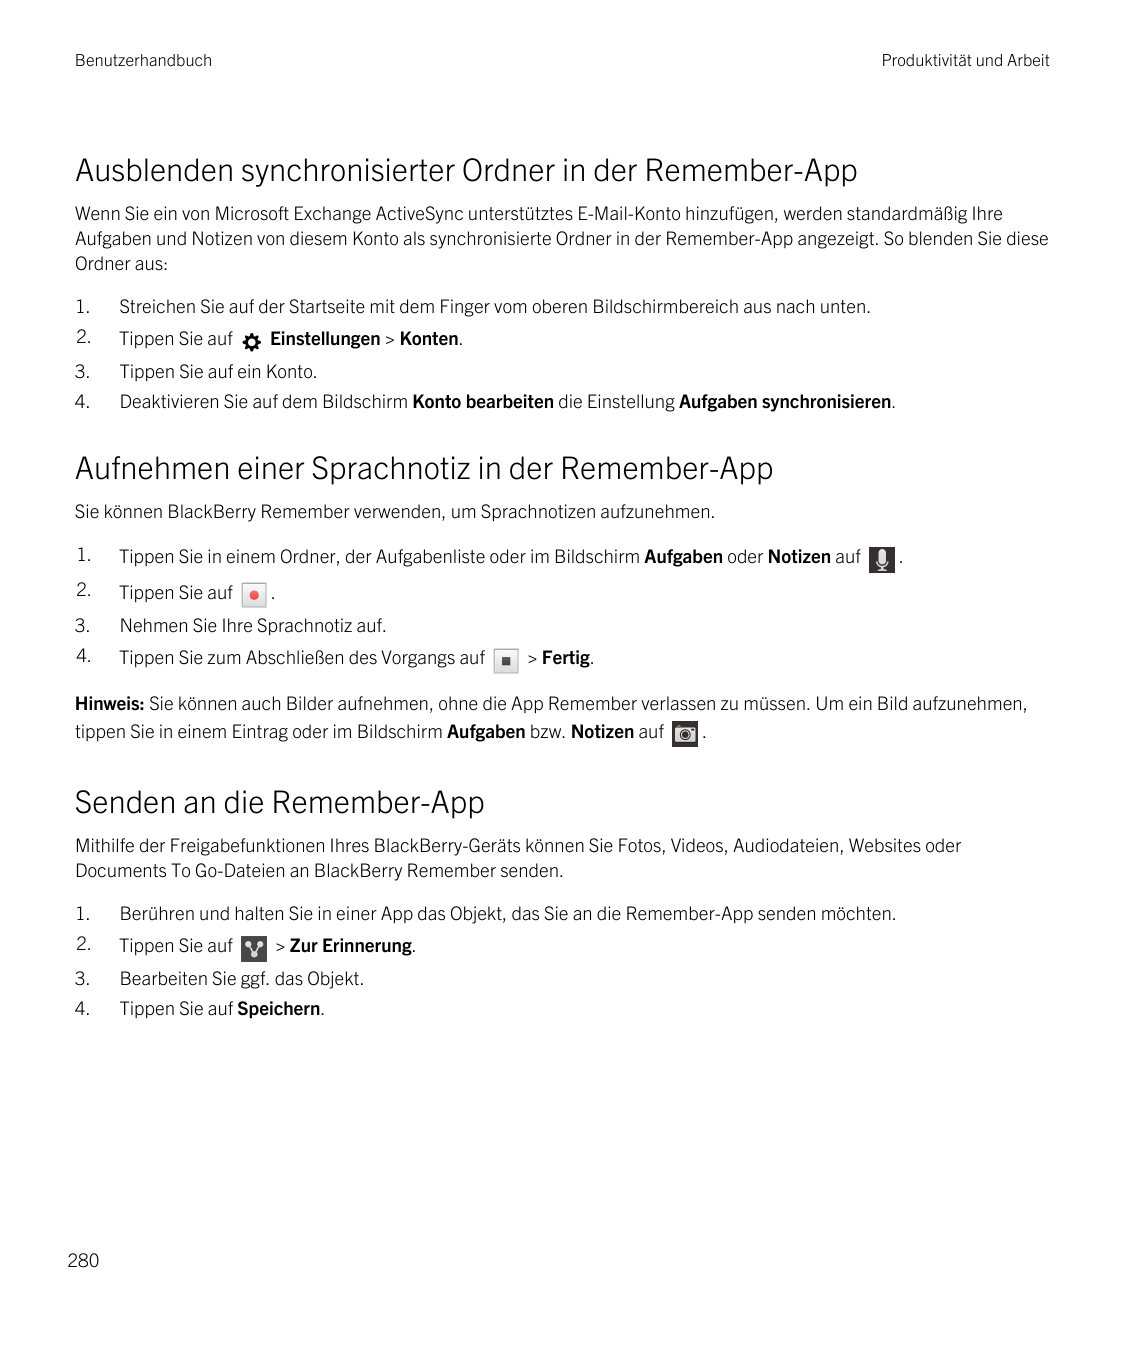 BenutzerhandbuchProduktivität und ArbeitAusblenden synchronisierter Ordner in der Remember-AppWenn Sie ein von Microsoft Exchang